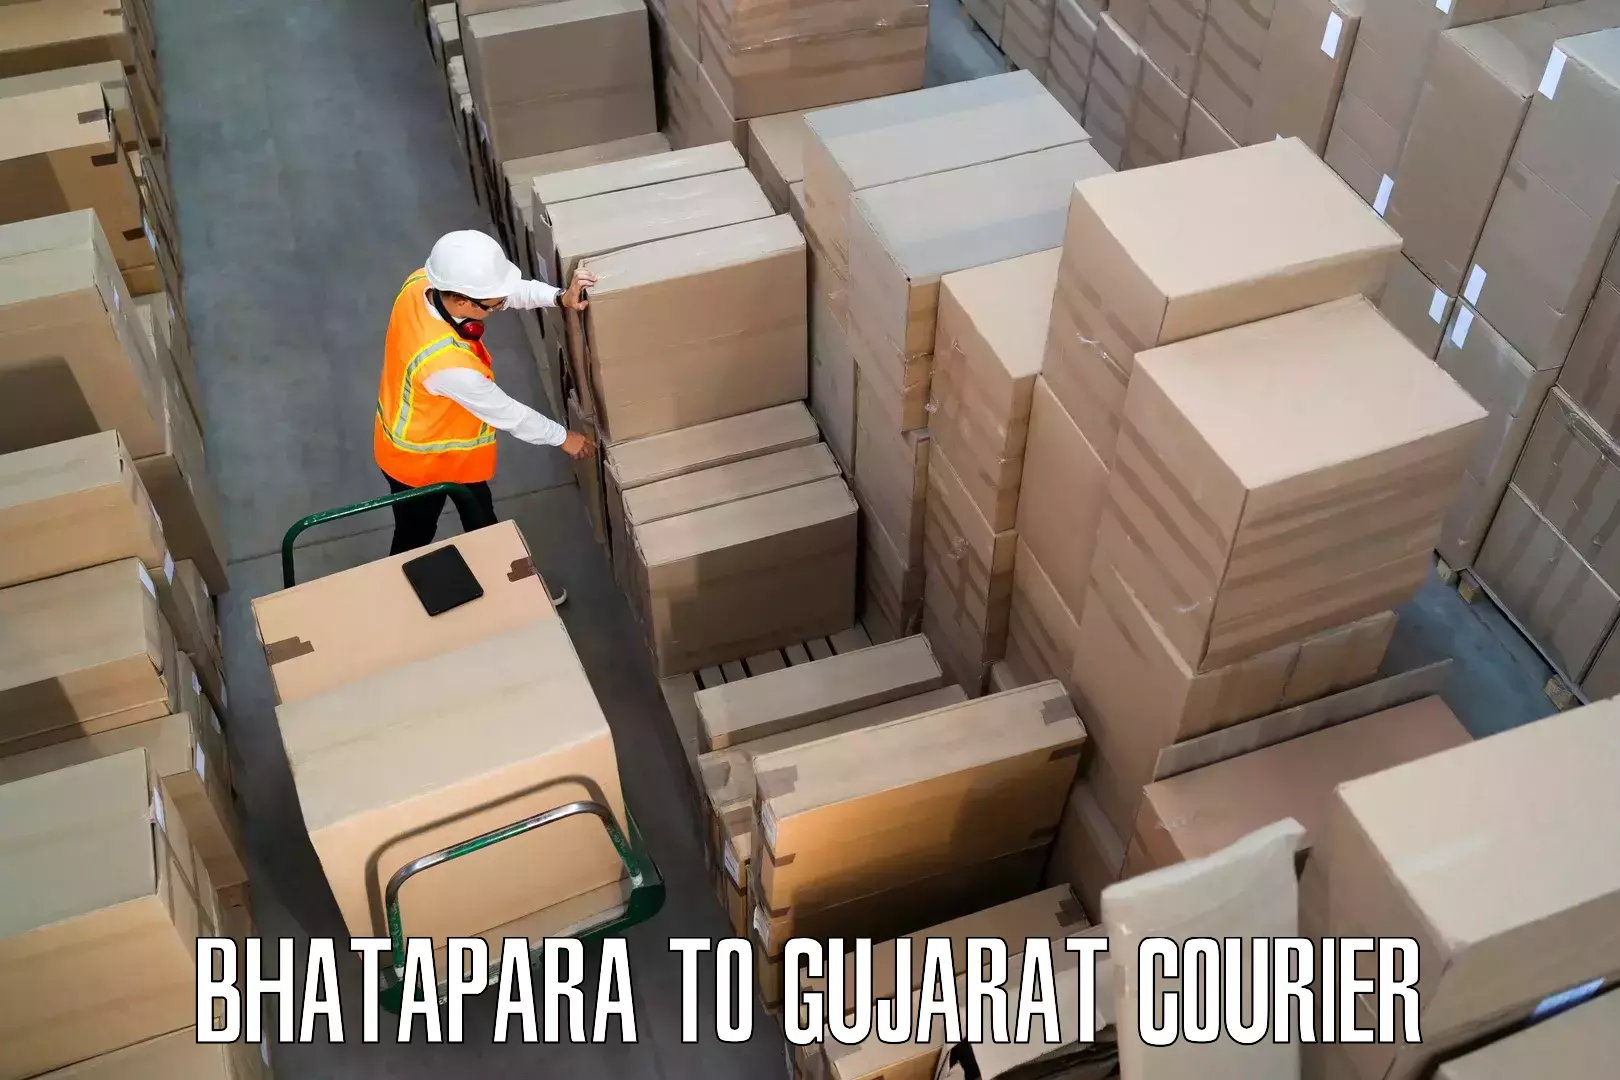 Furniture moving service Bhatapara to IIT Gandhi Nagar